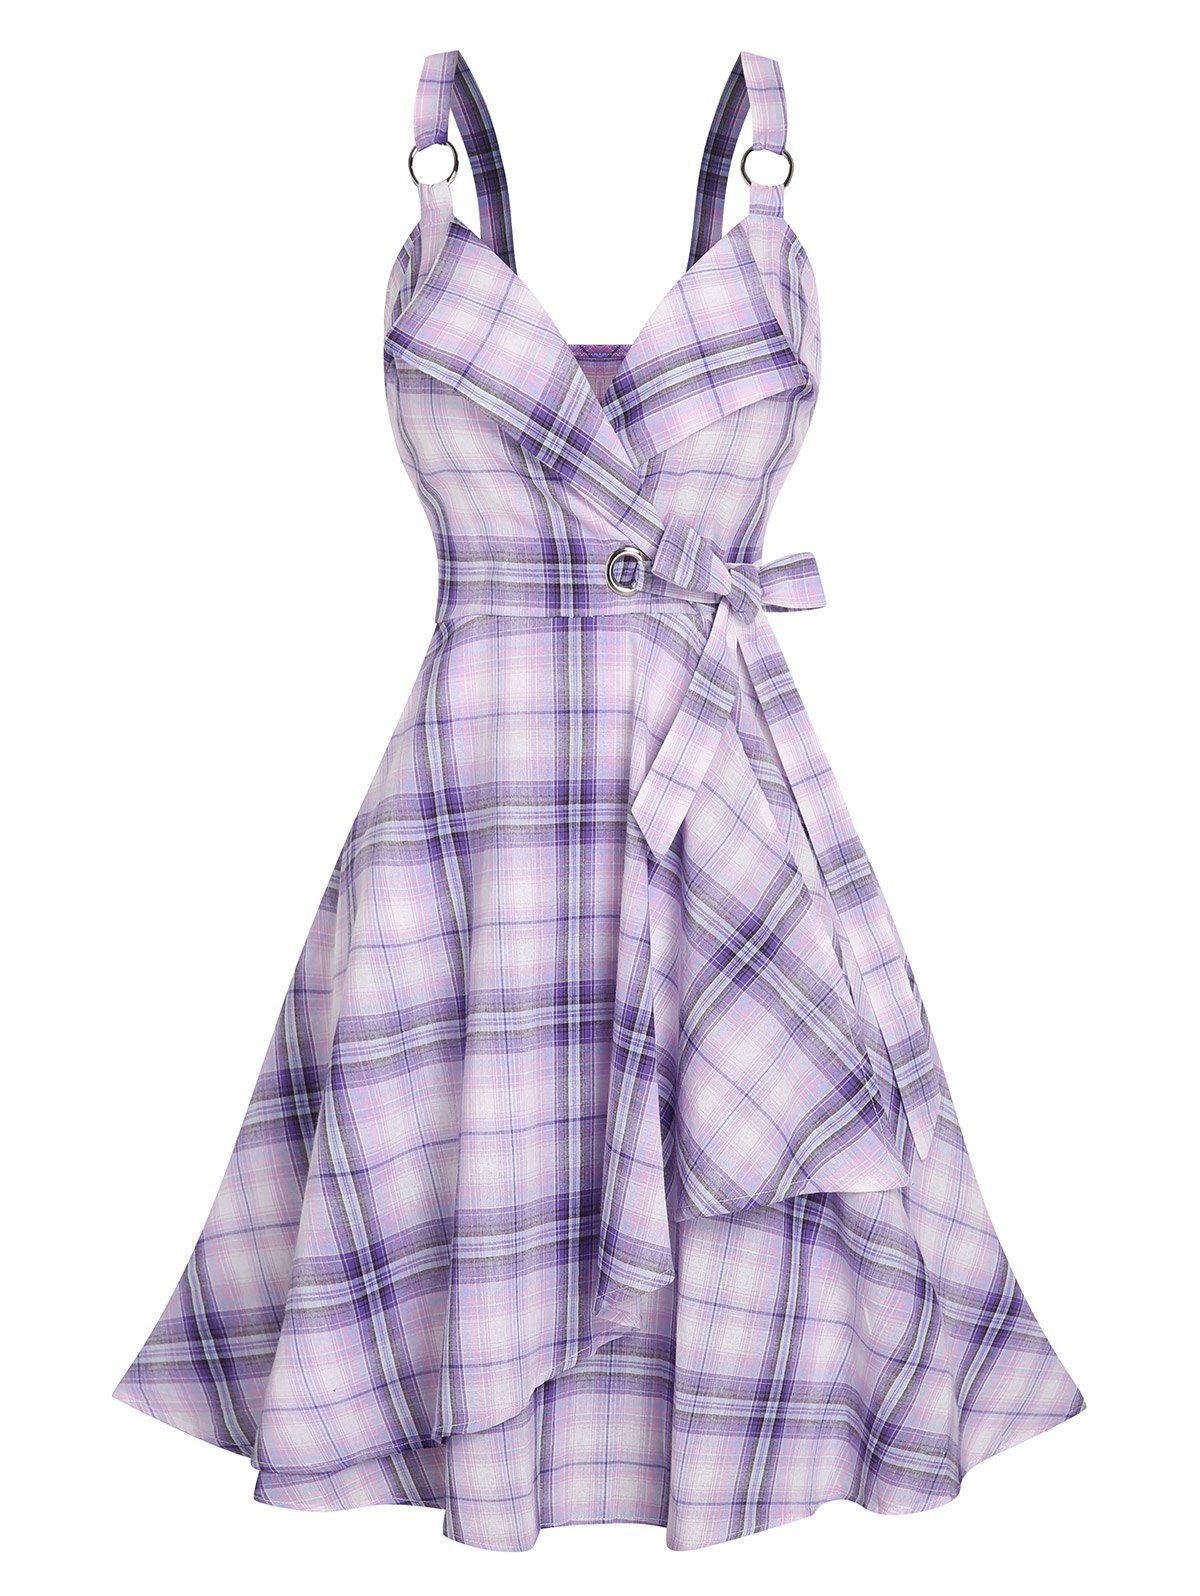 Robe Superposée à Carreaux avec Nœud Papillon - Violet clair M